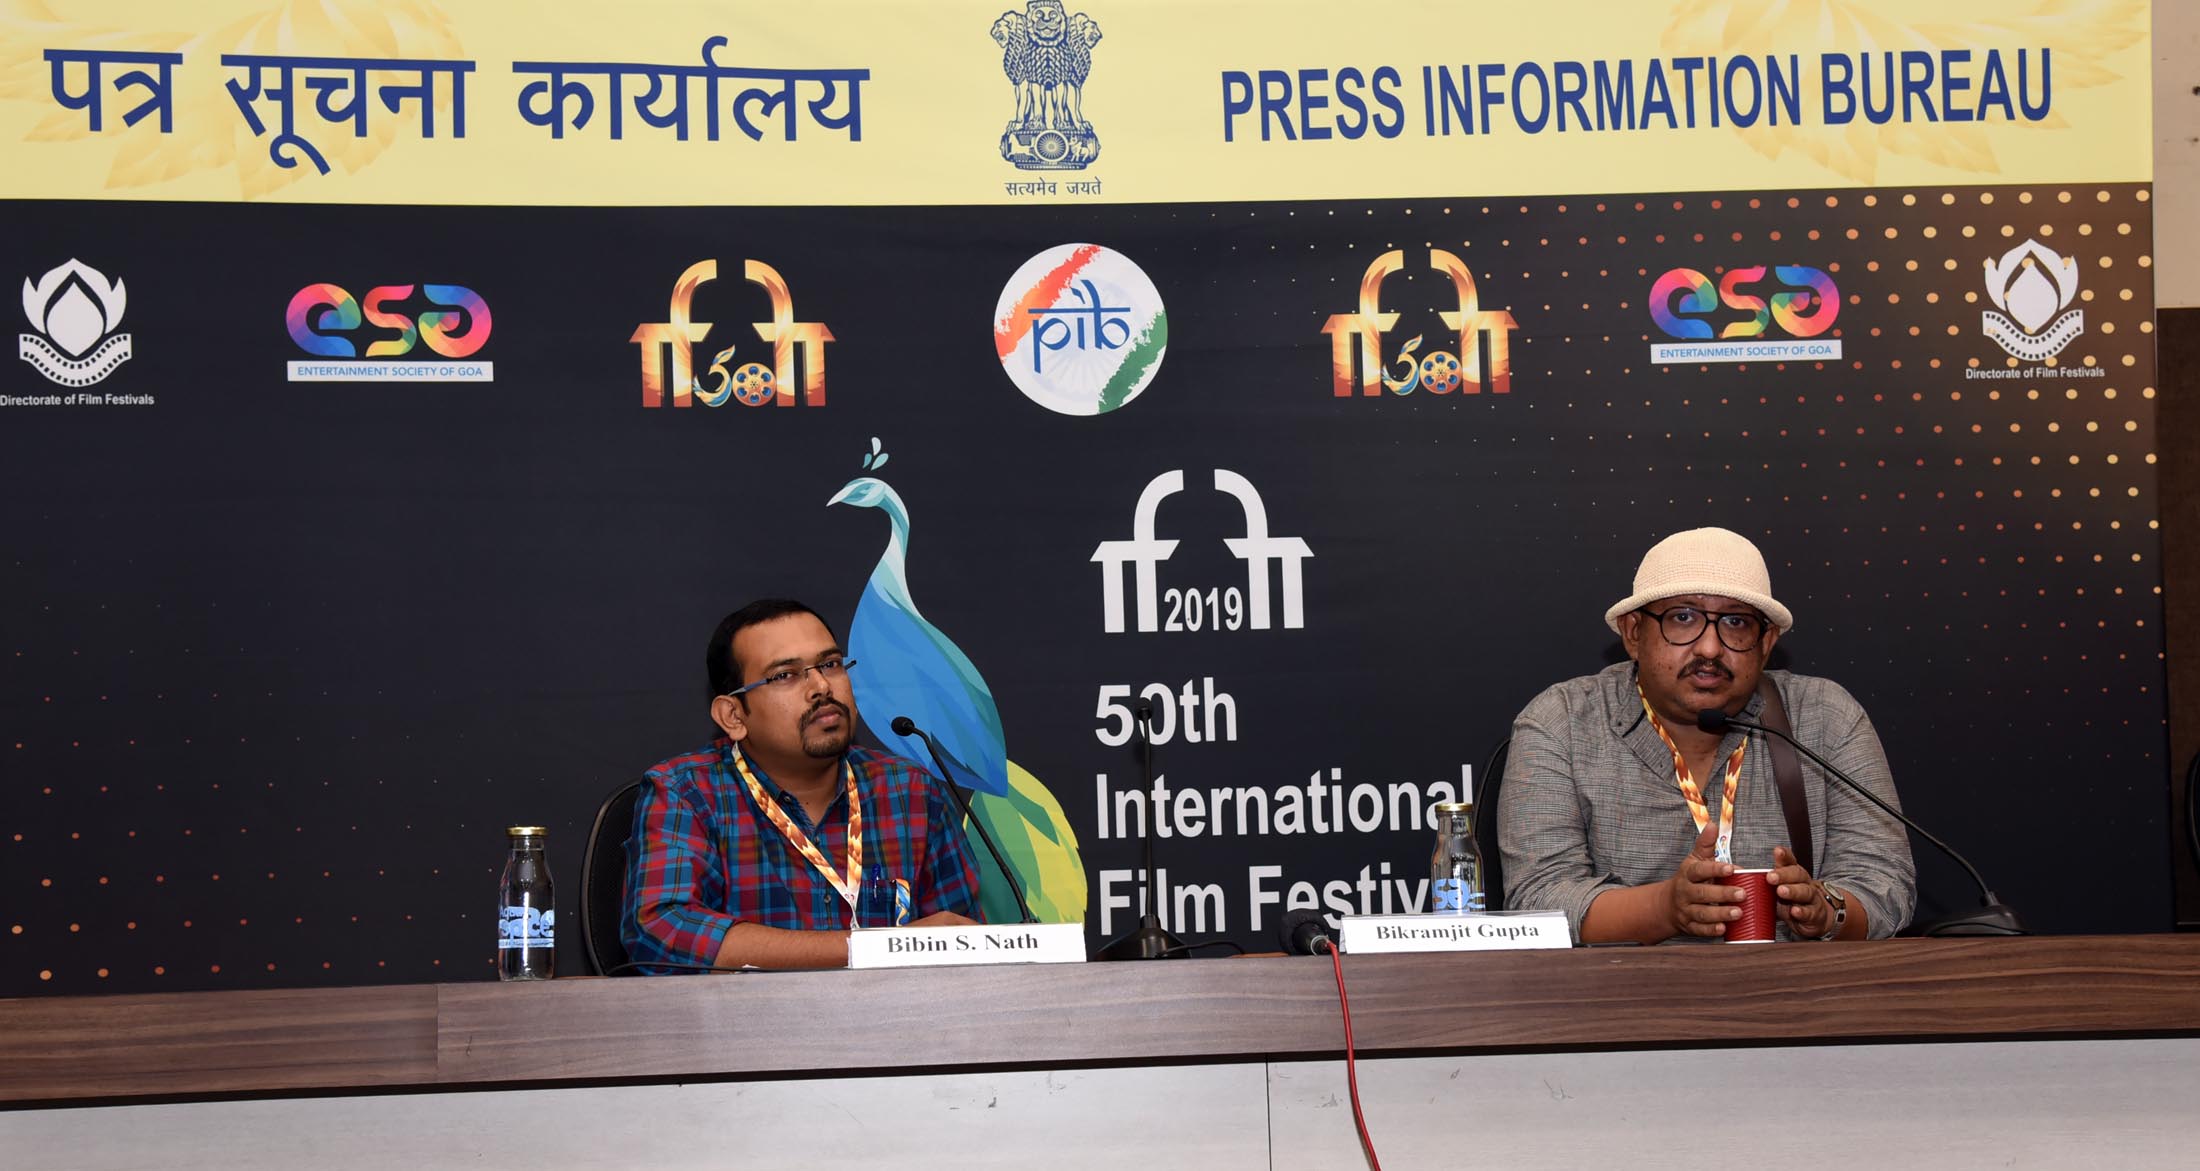 भारत में लघु फिल्में दिखाने के लिए समर्पित टीवी चैनलों की जरूरत: विक्रम जीत गुप्ता